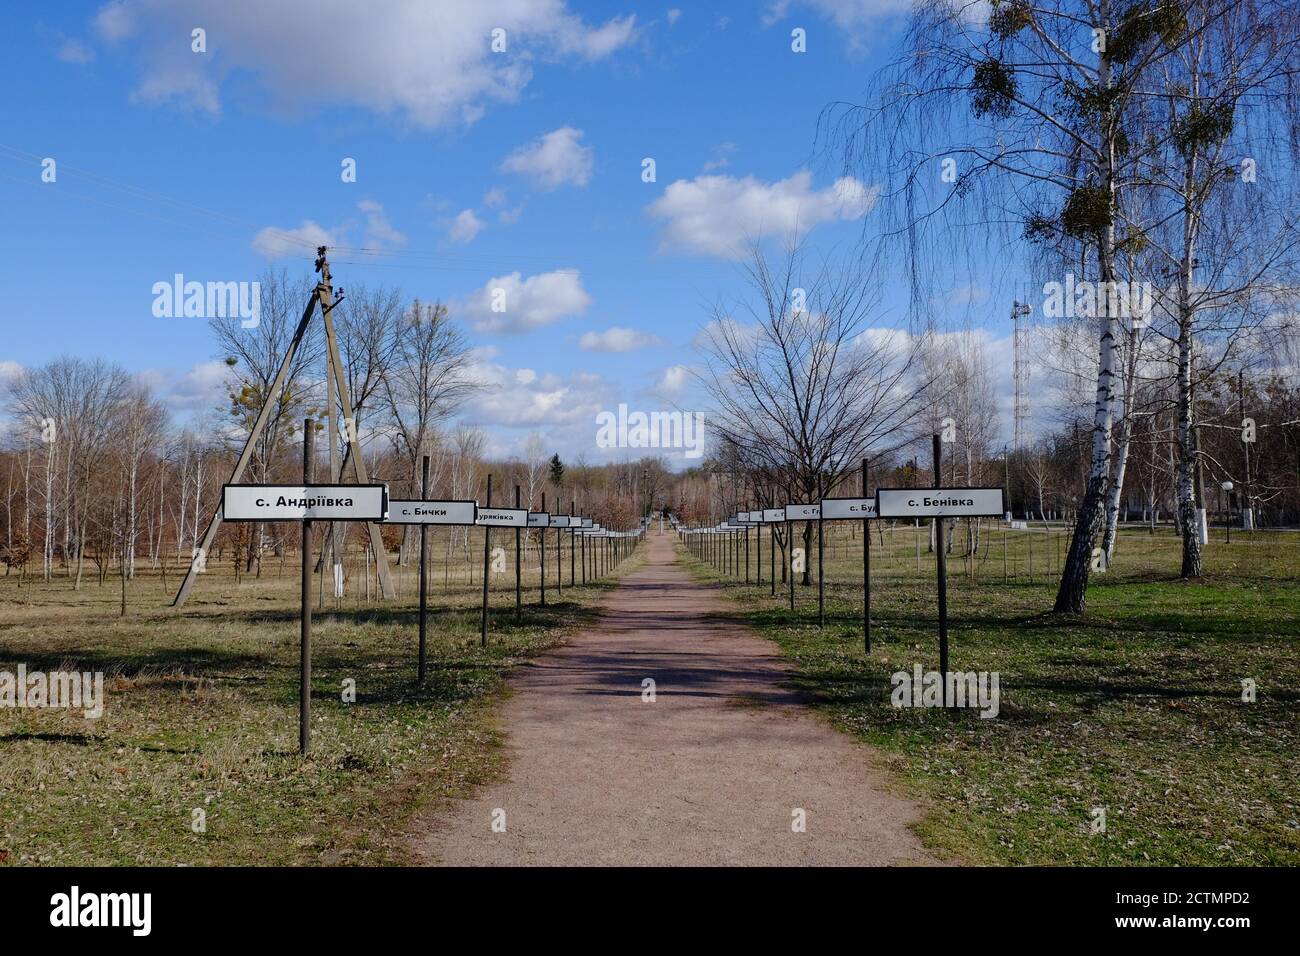 Callejón con los nombres de las aldeas abandonadas en la zona del desastre nuclear de Chernobyl. Complejo conmemorativo para reasentar pueblos en la zona de exclusión. Si Foto de stock